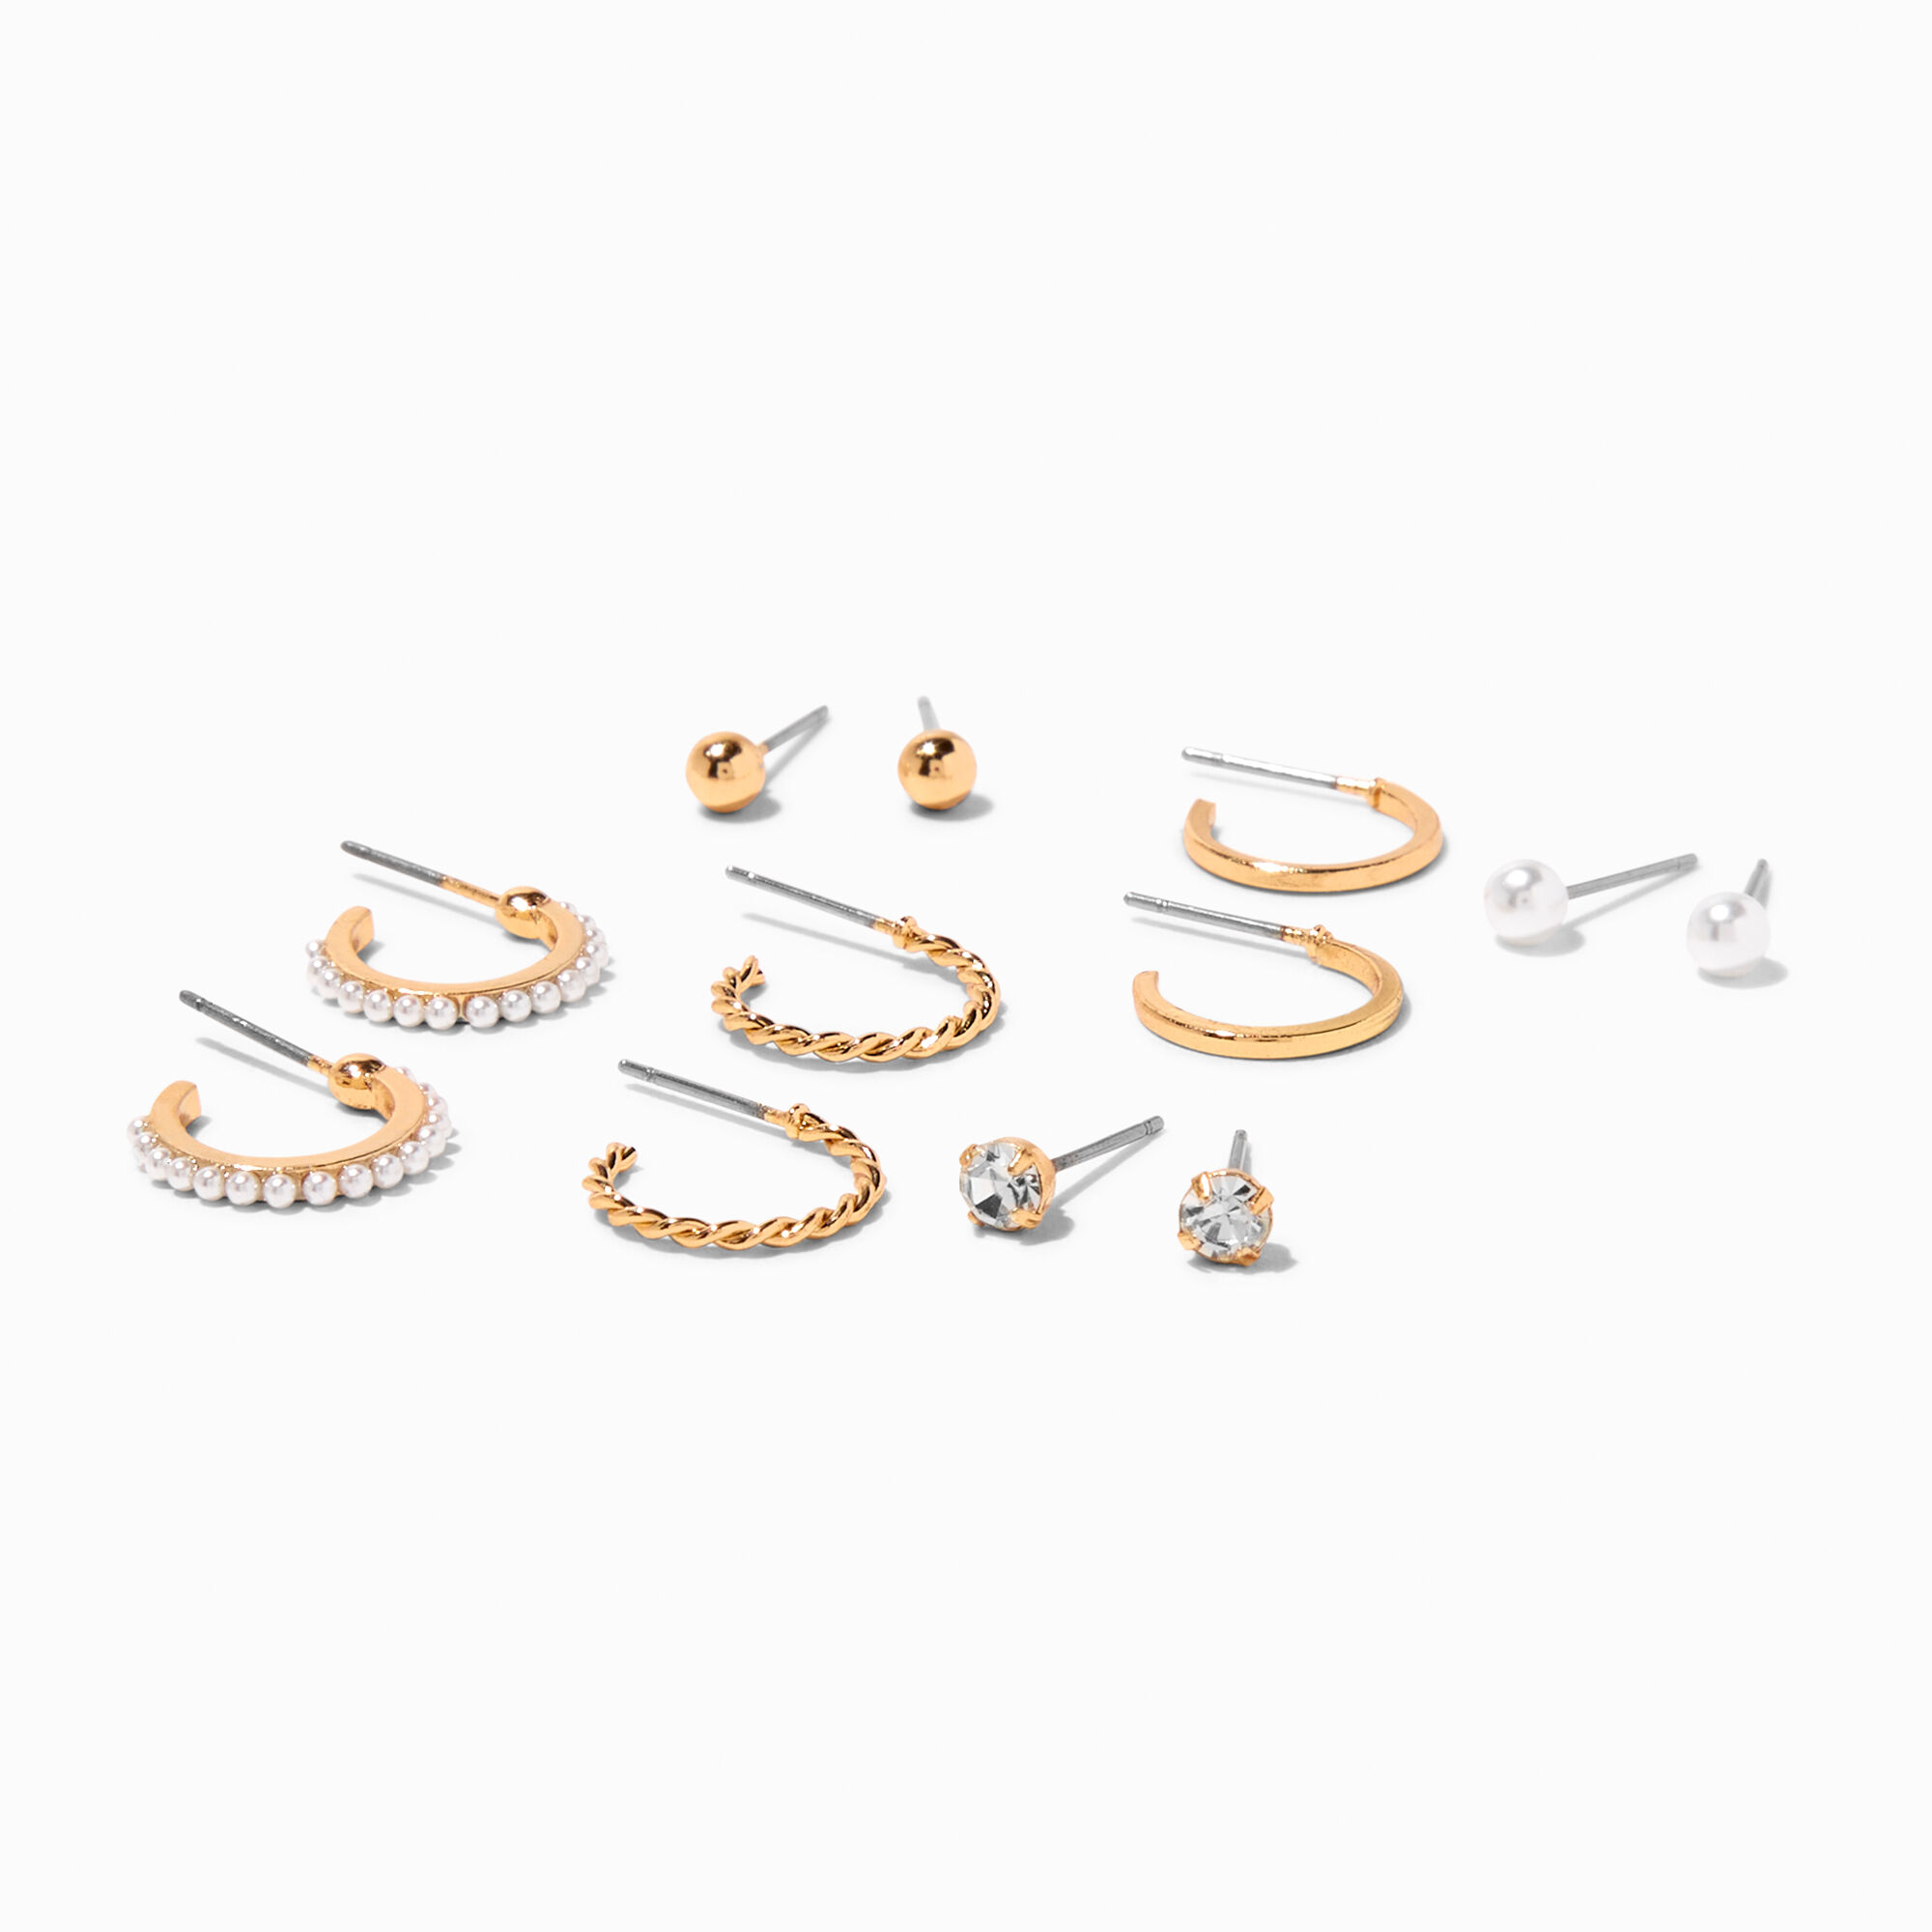 DIY Jewelry Kit - Golden Bliss Earring Kit by